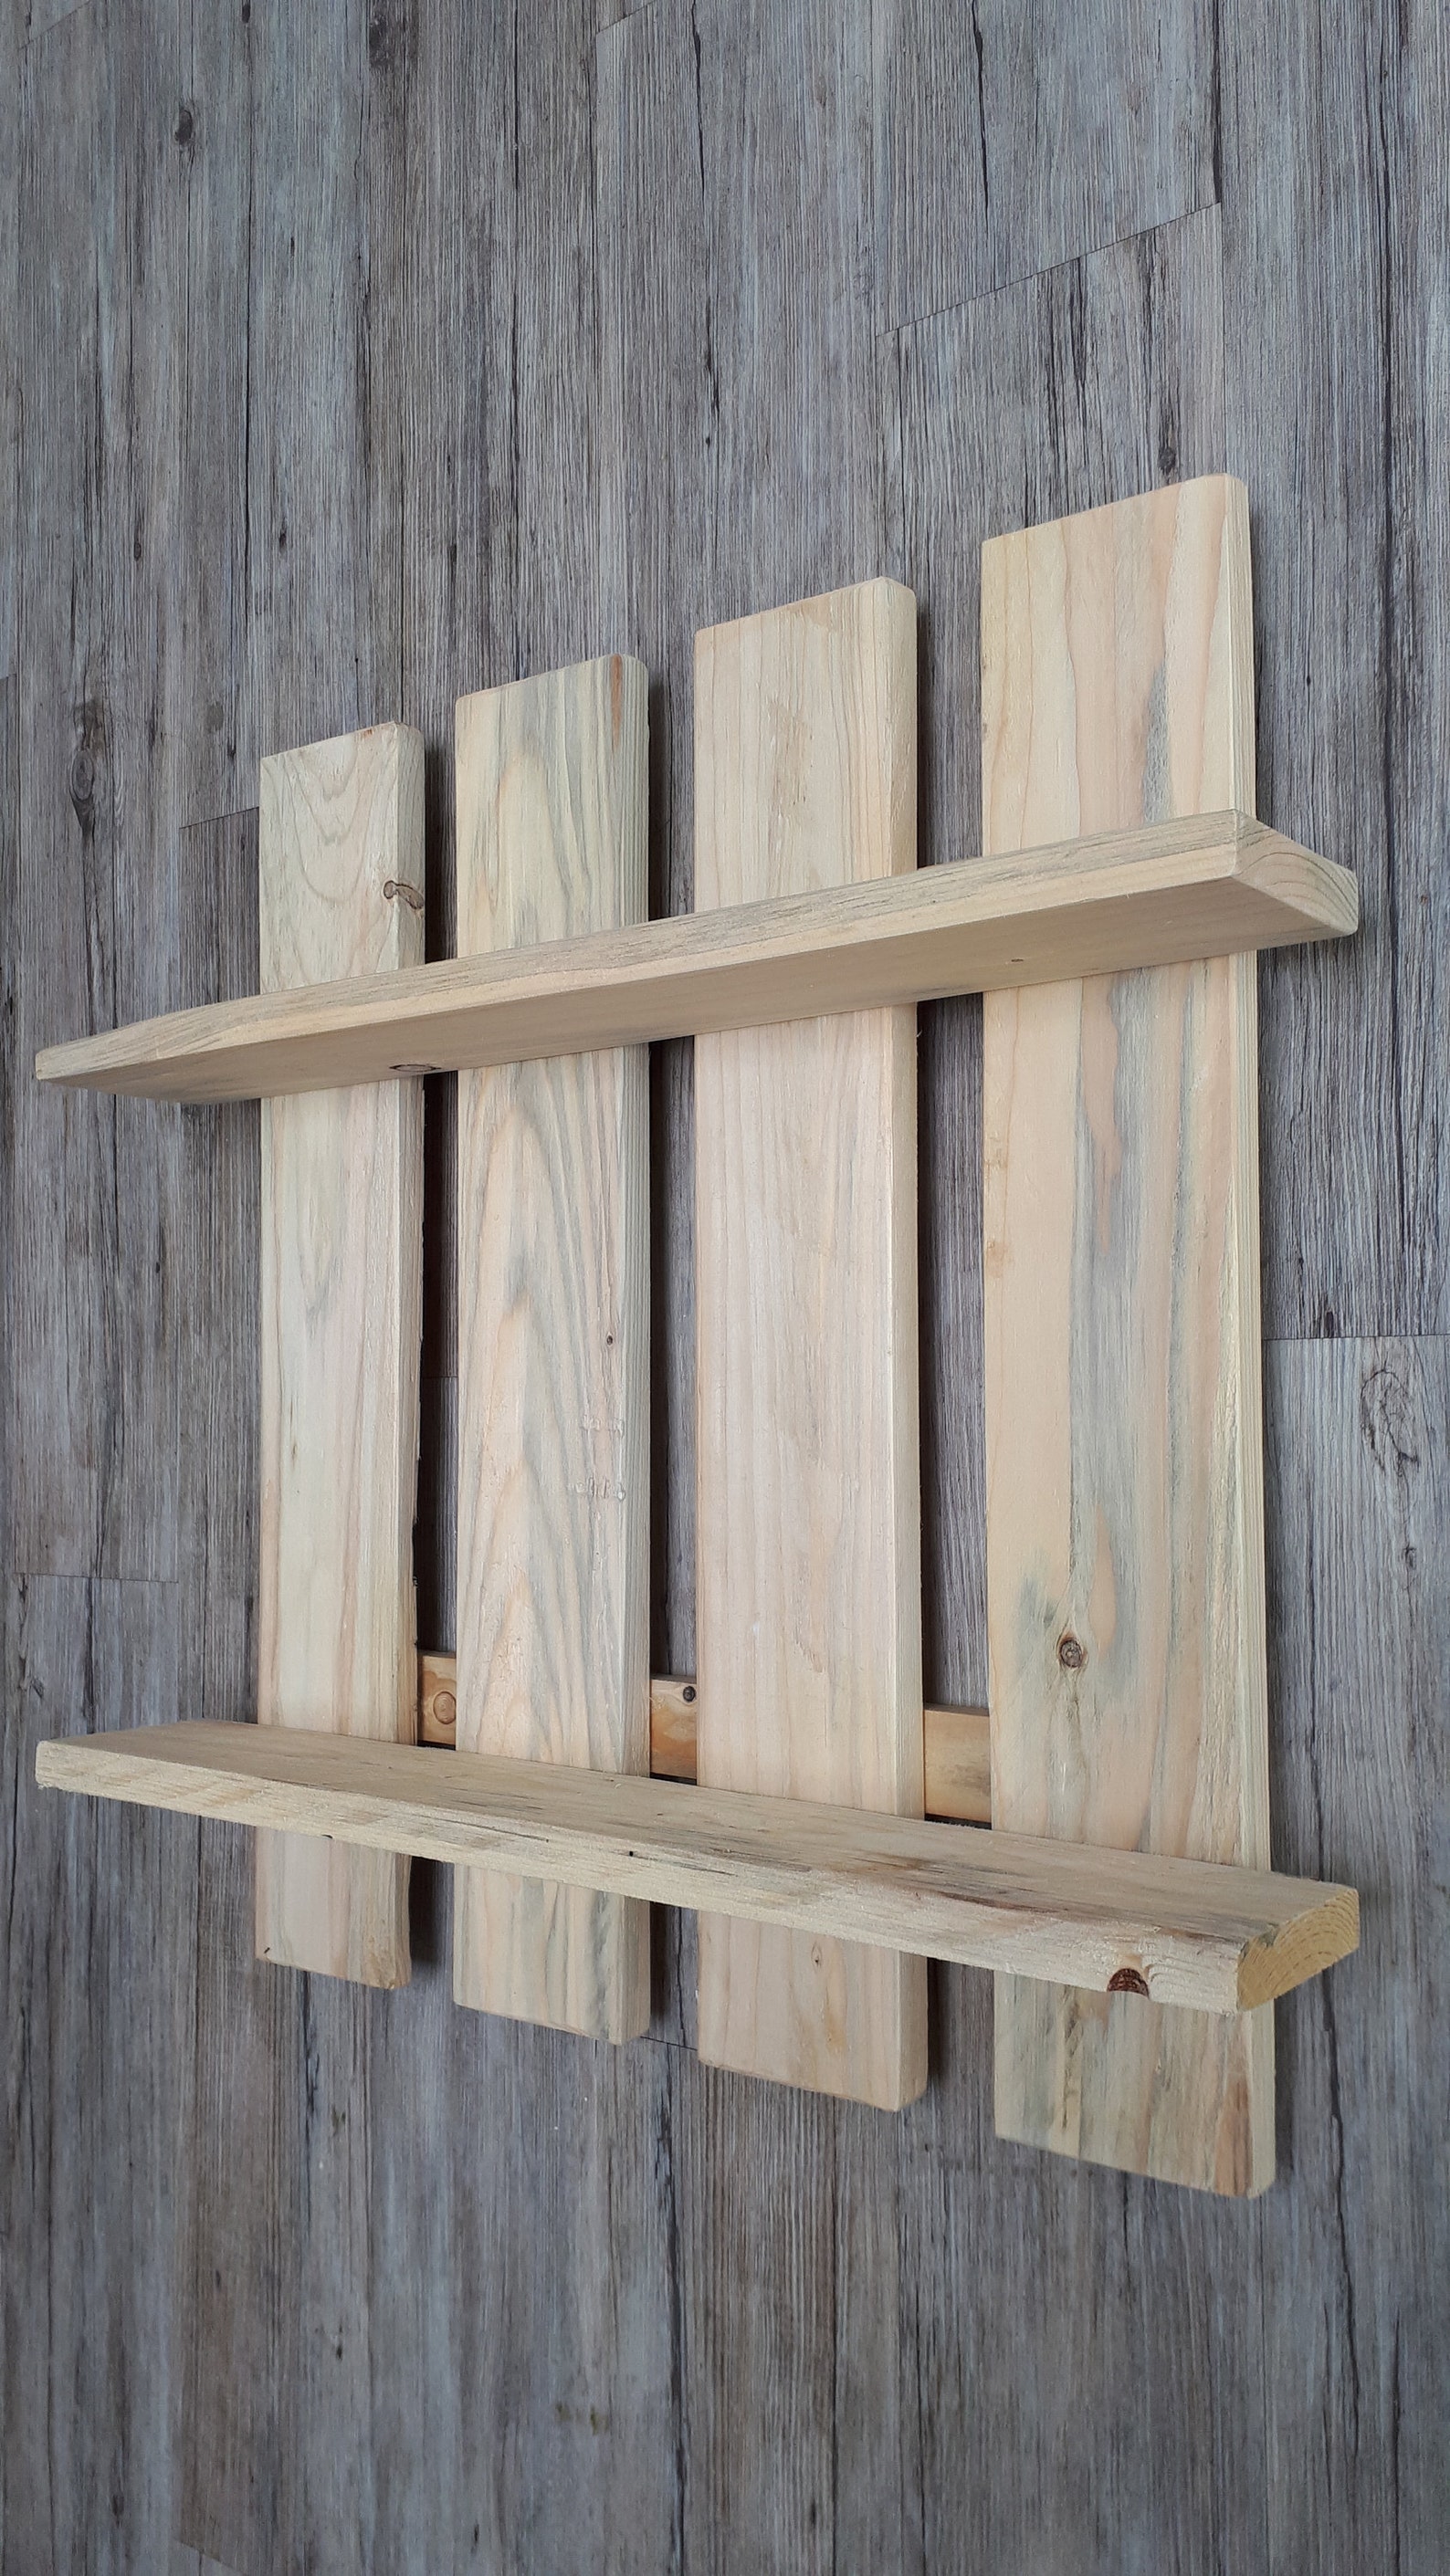 Estante colgante natural madera rústico 2 estantes | Etsy